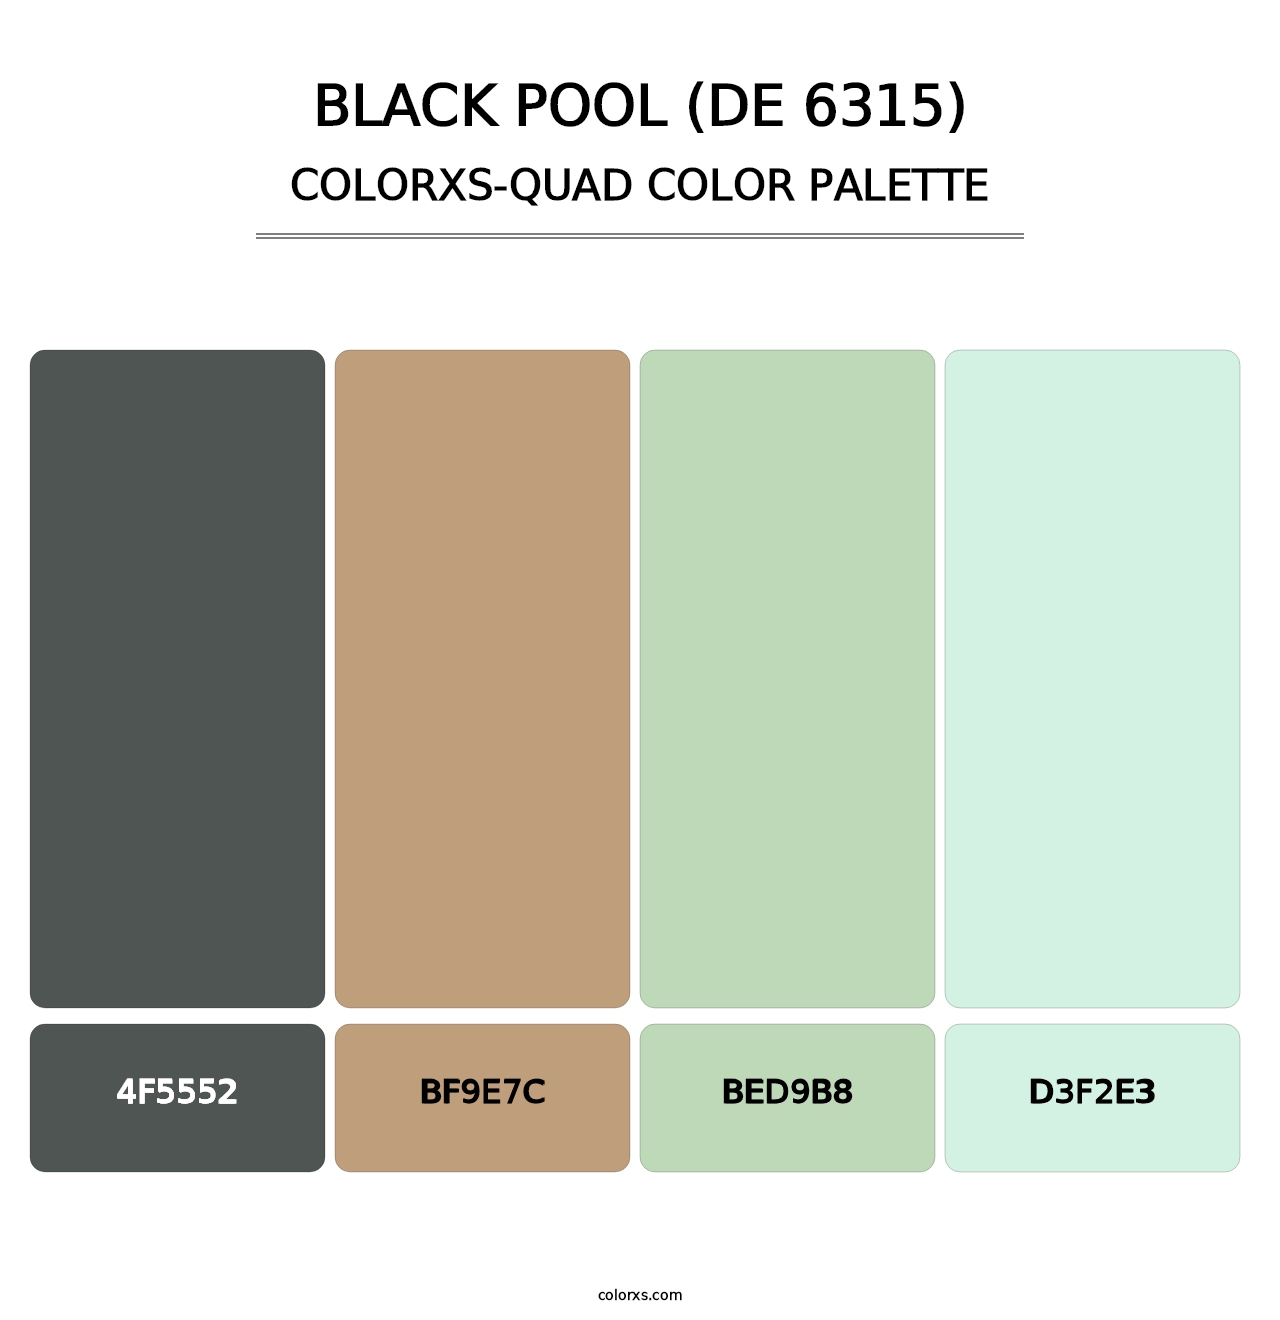 Black Pool (DE 6315) - Colorxs Quad Palette